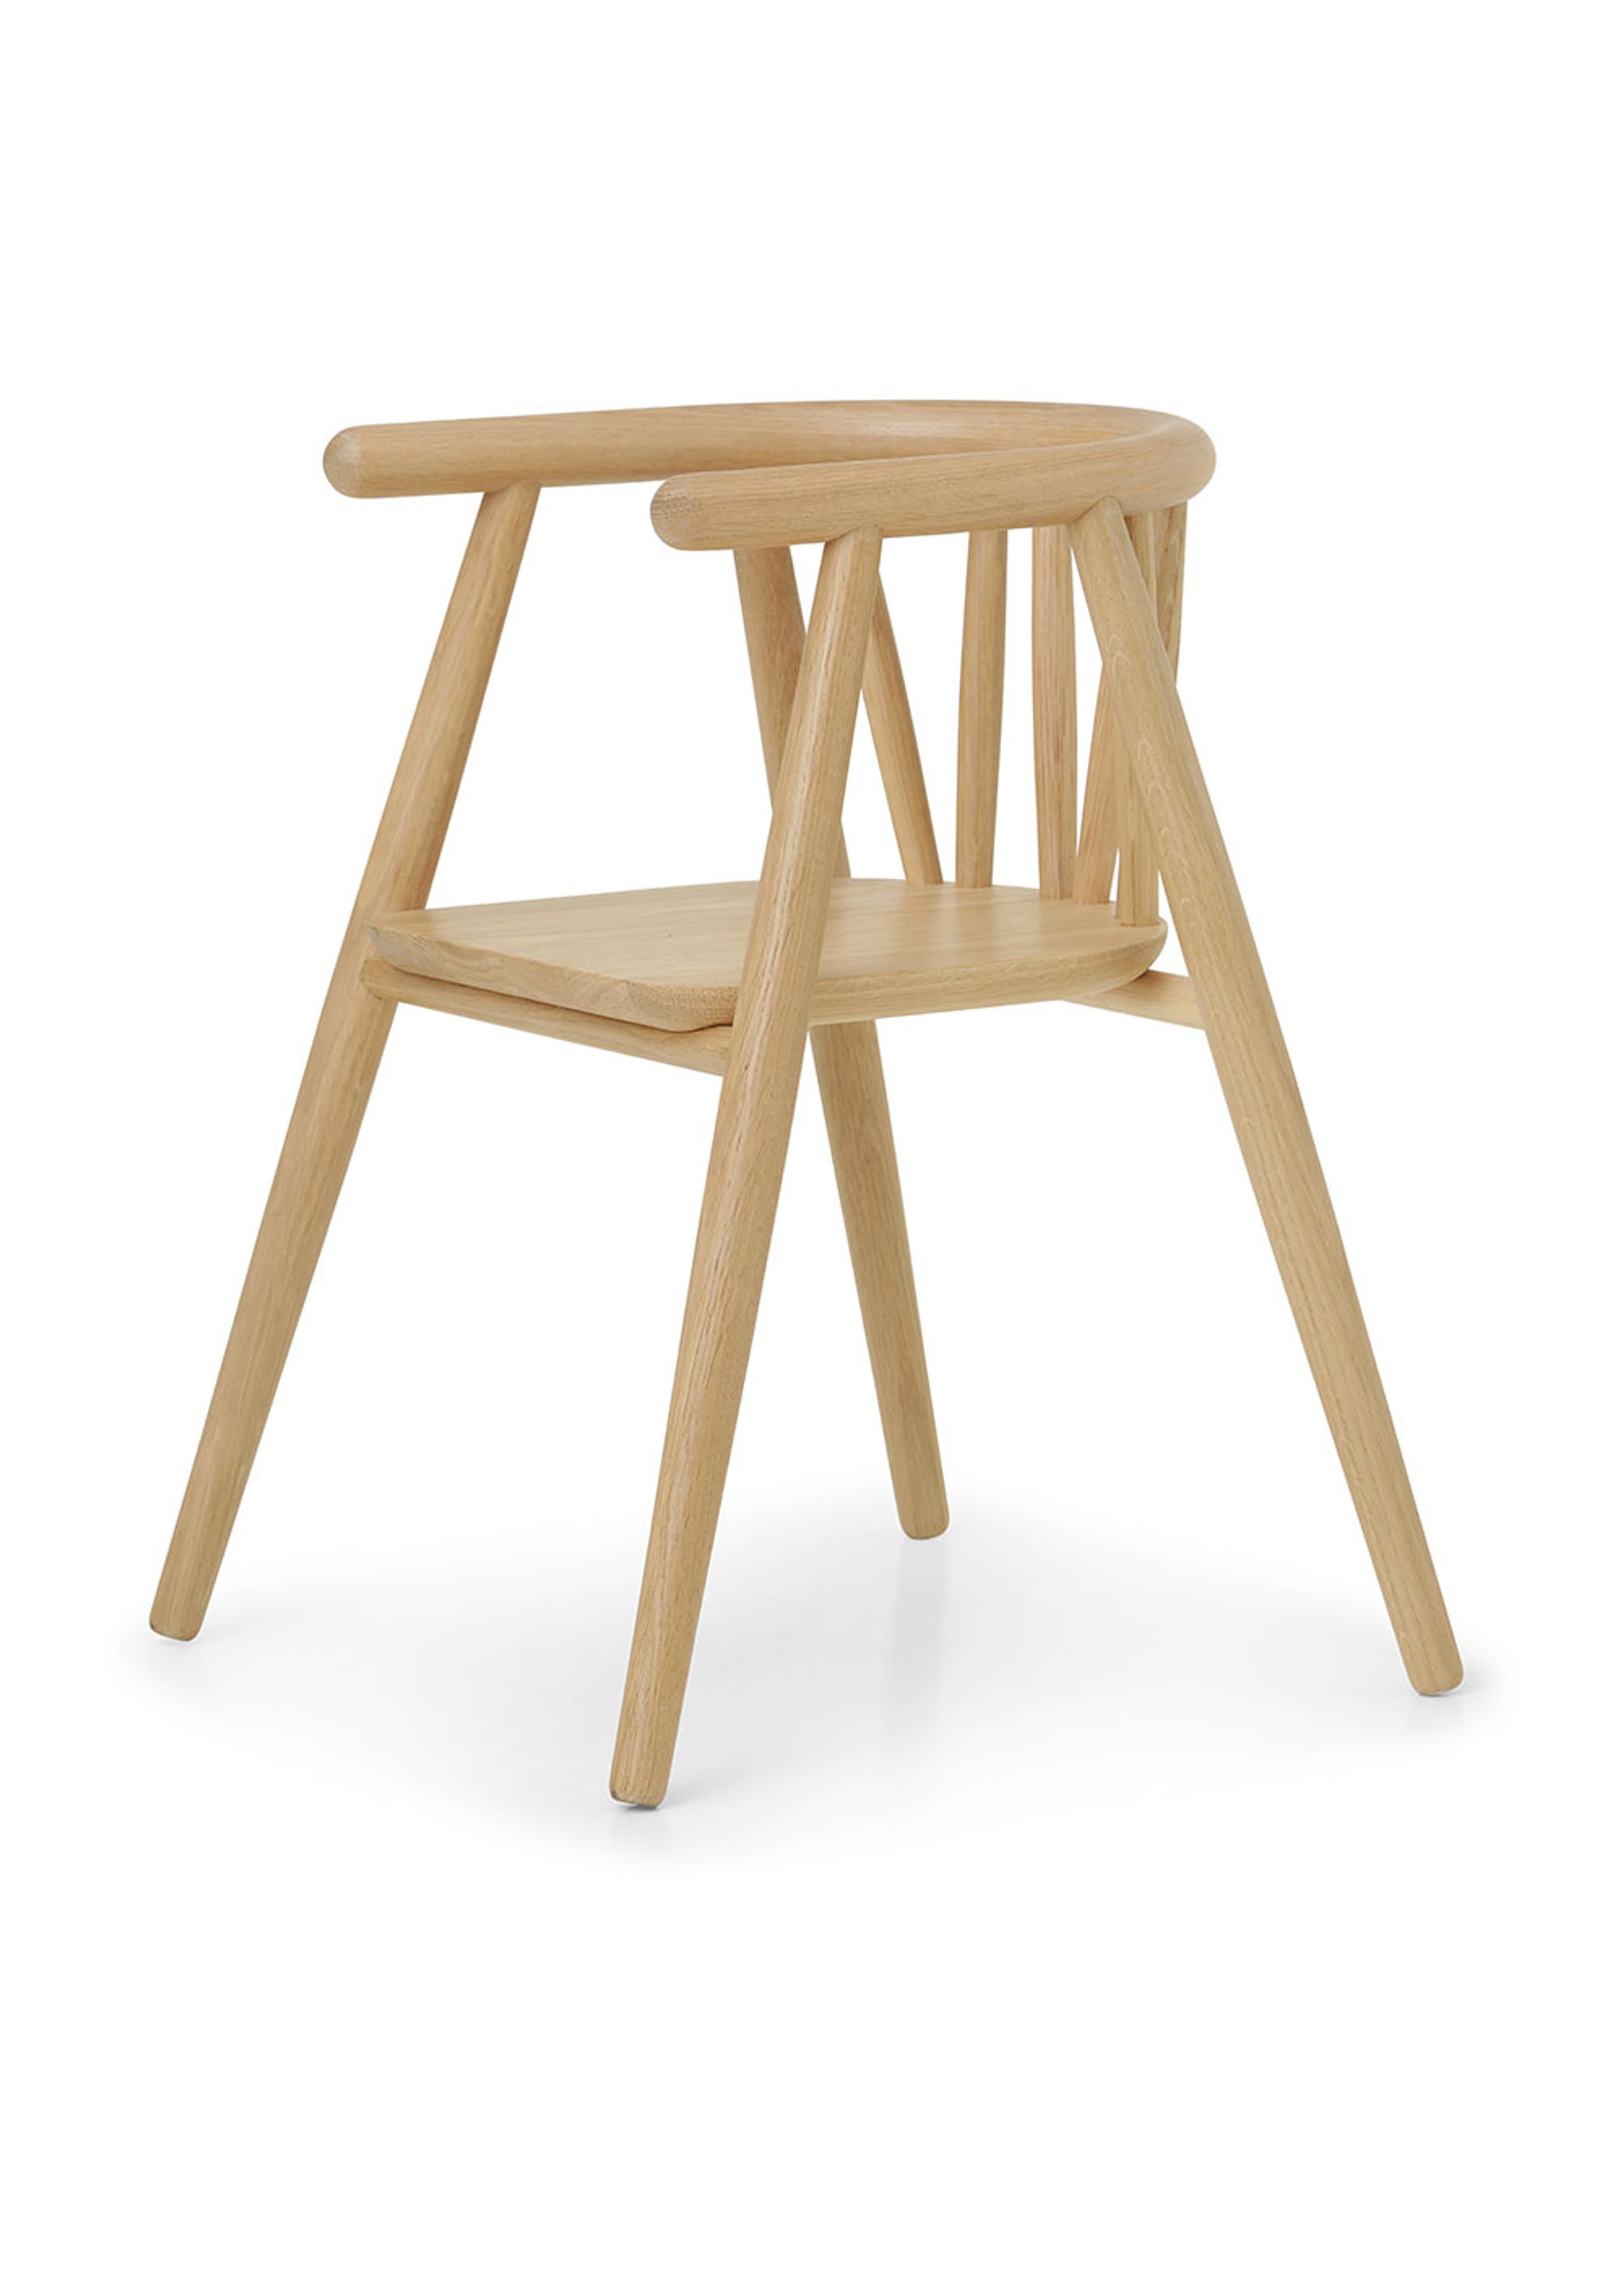 Oaklings - Kids chair - Storm Kid's Chair - Oak